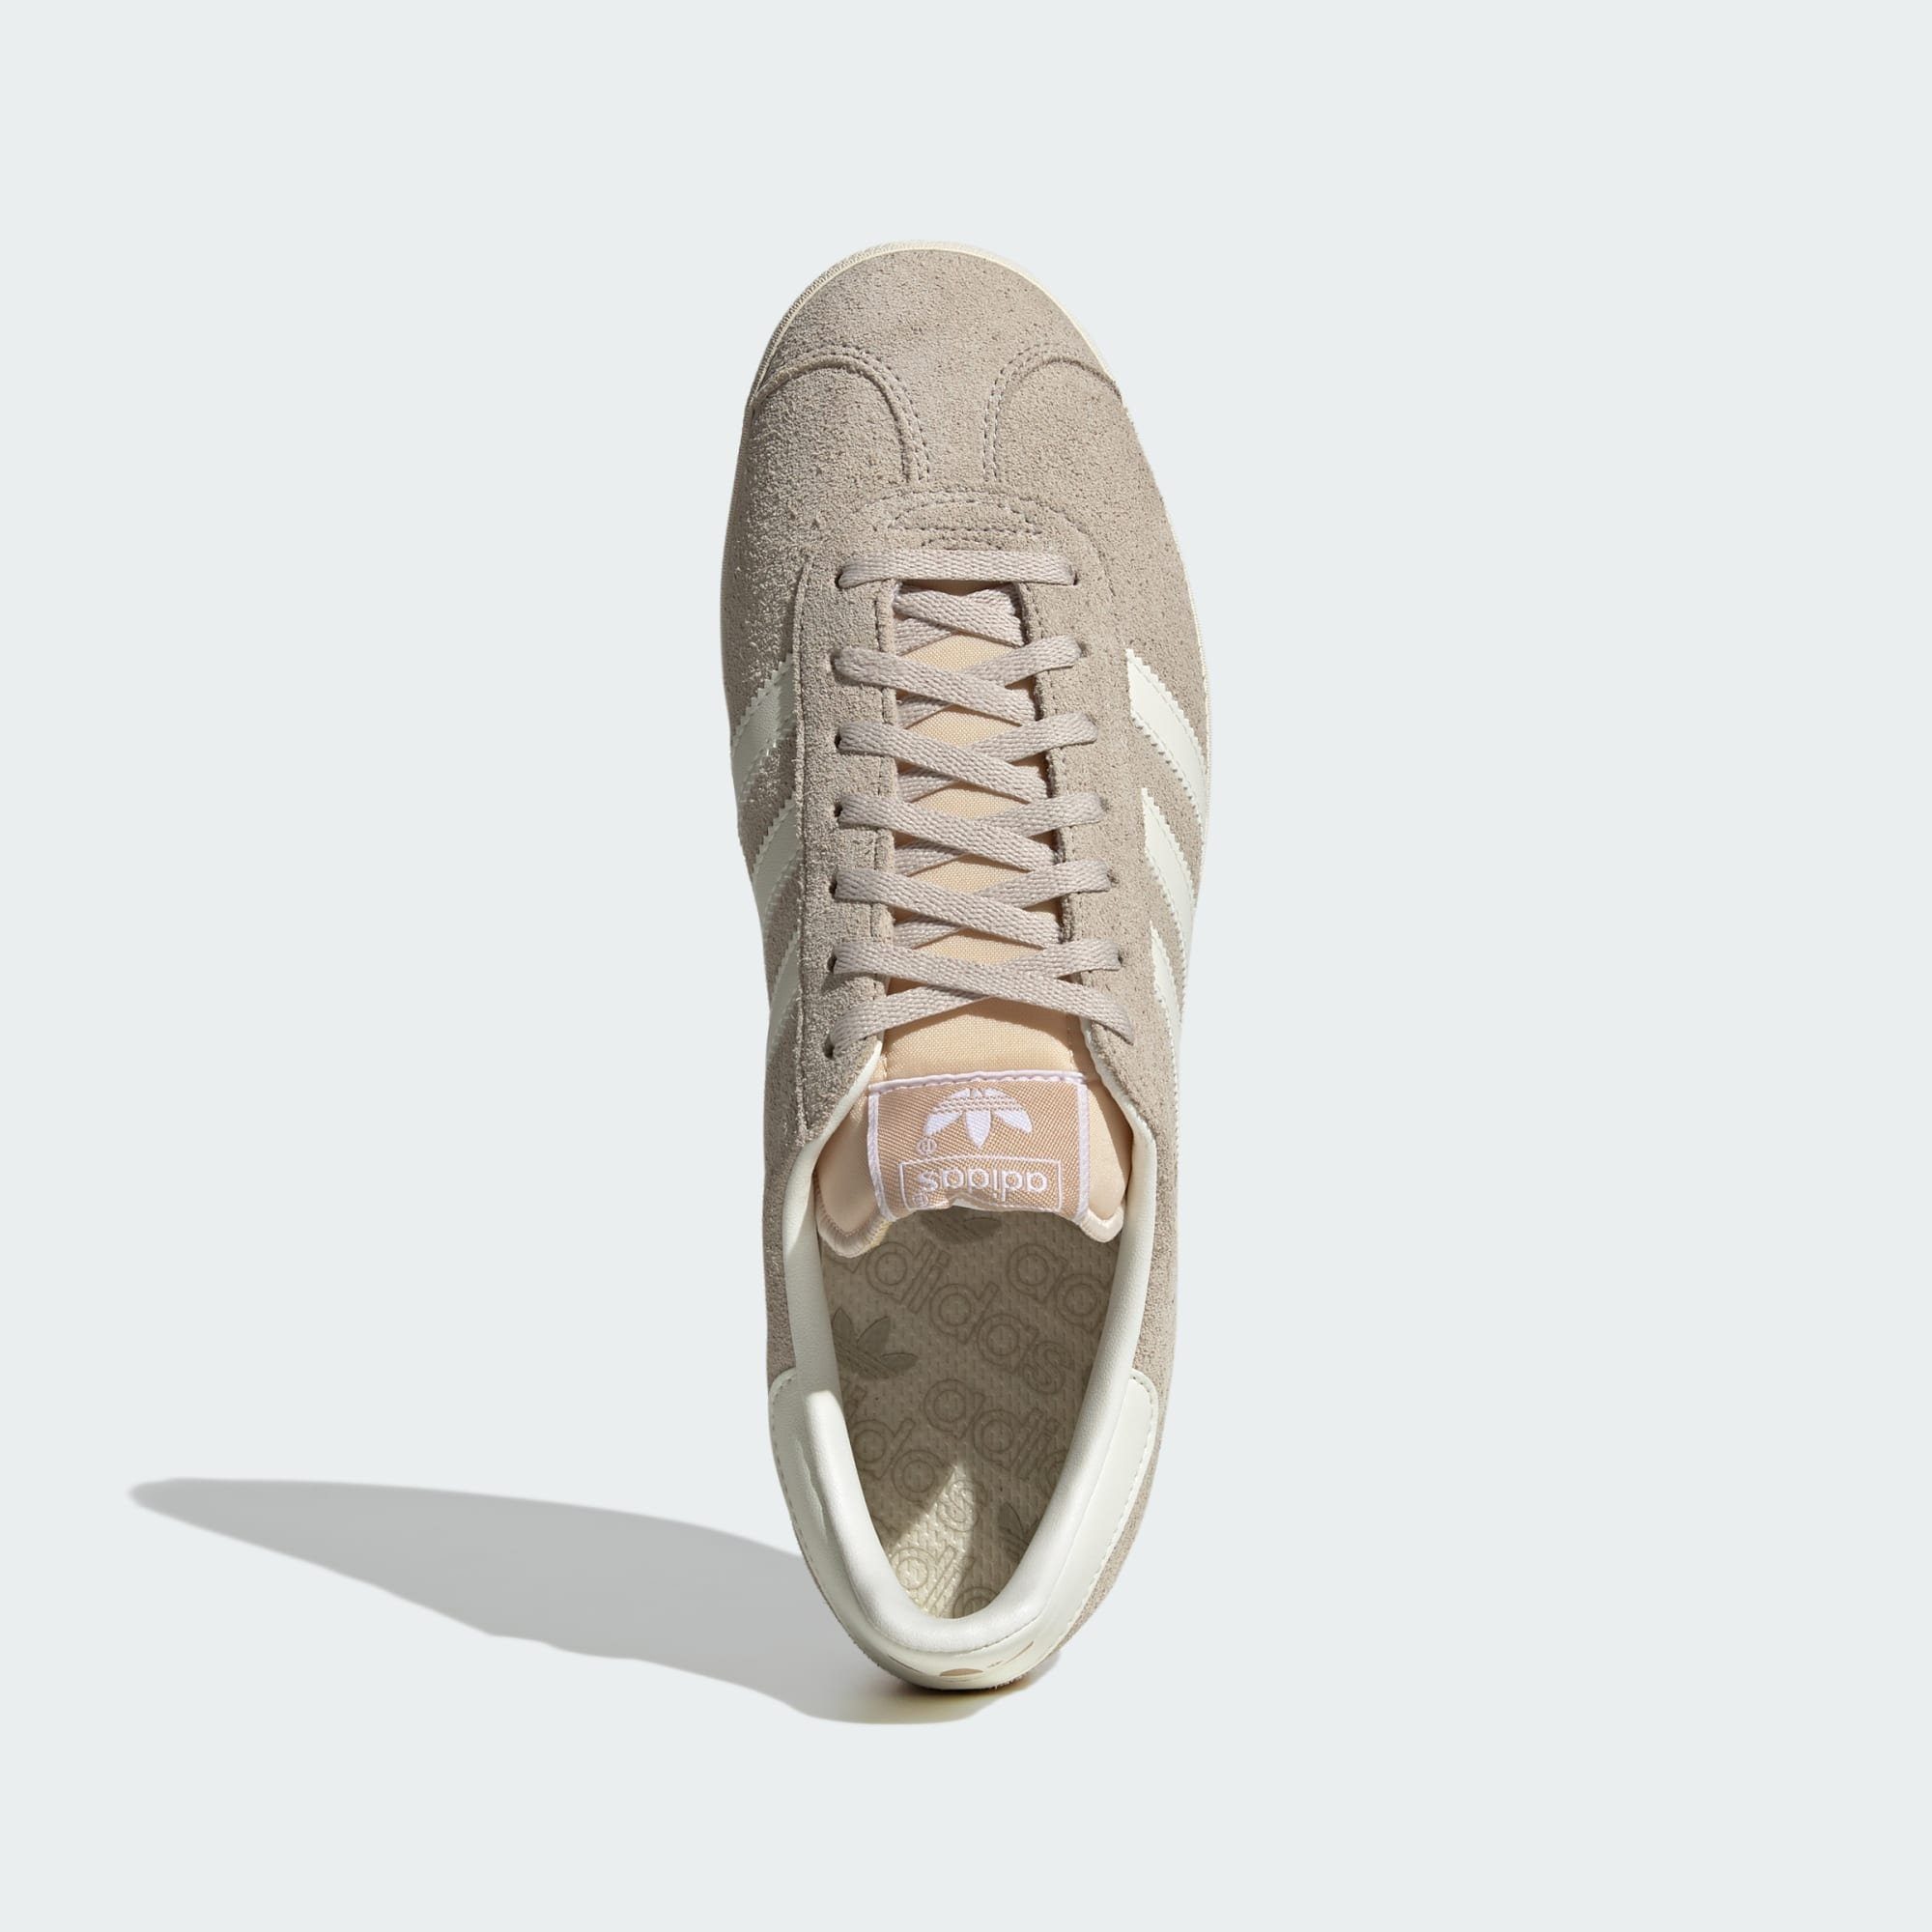 Originals Cream Sneaker adidas GAZELLE / White White Wonder / Beige SCHUH Off